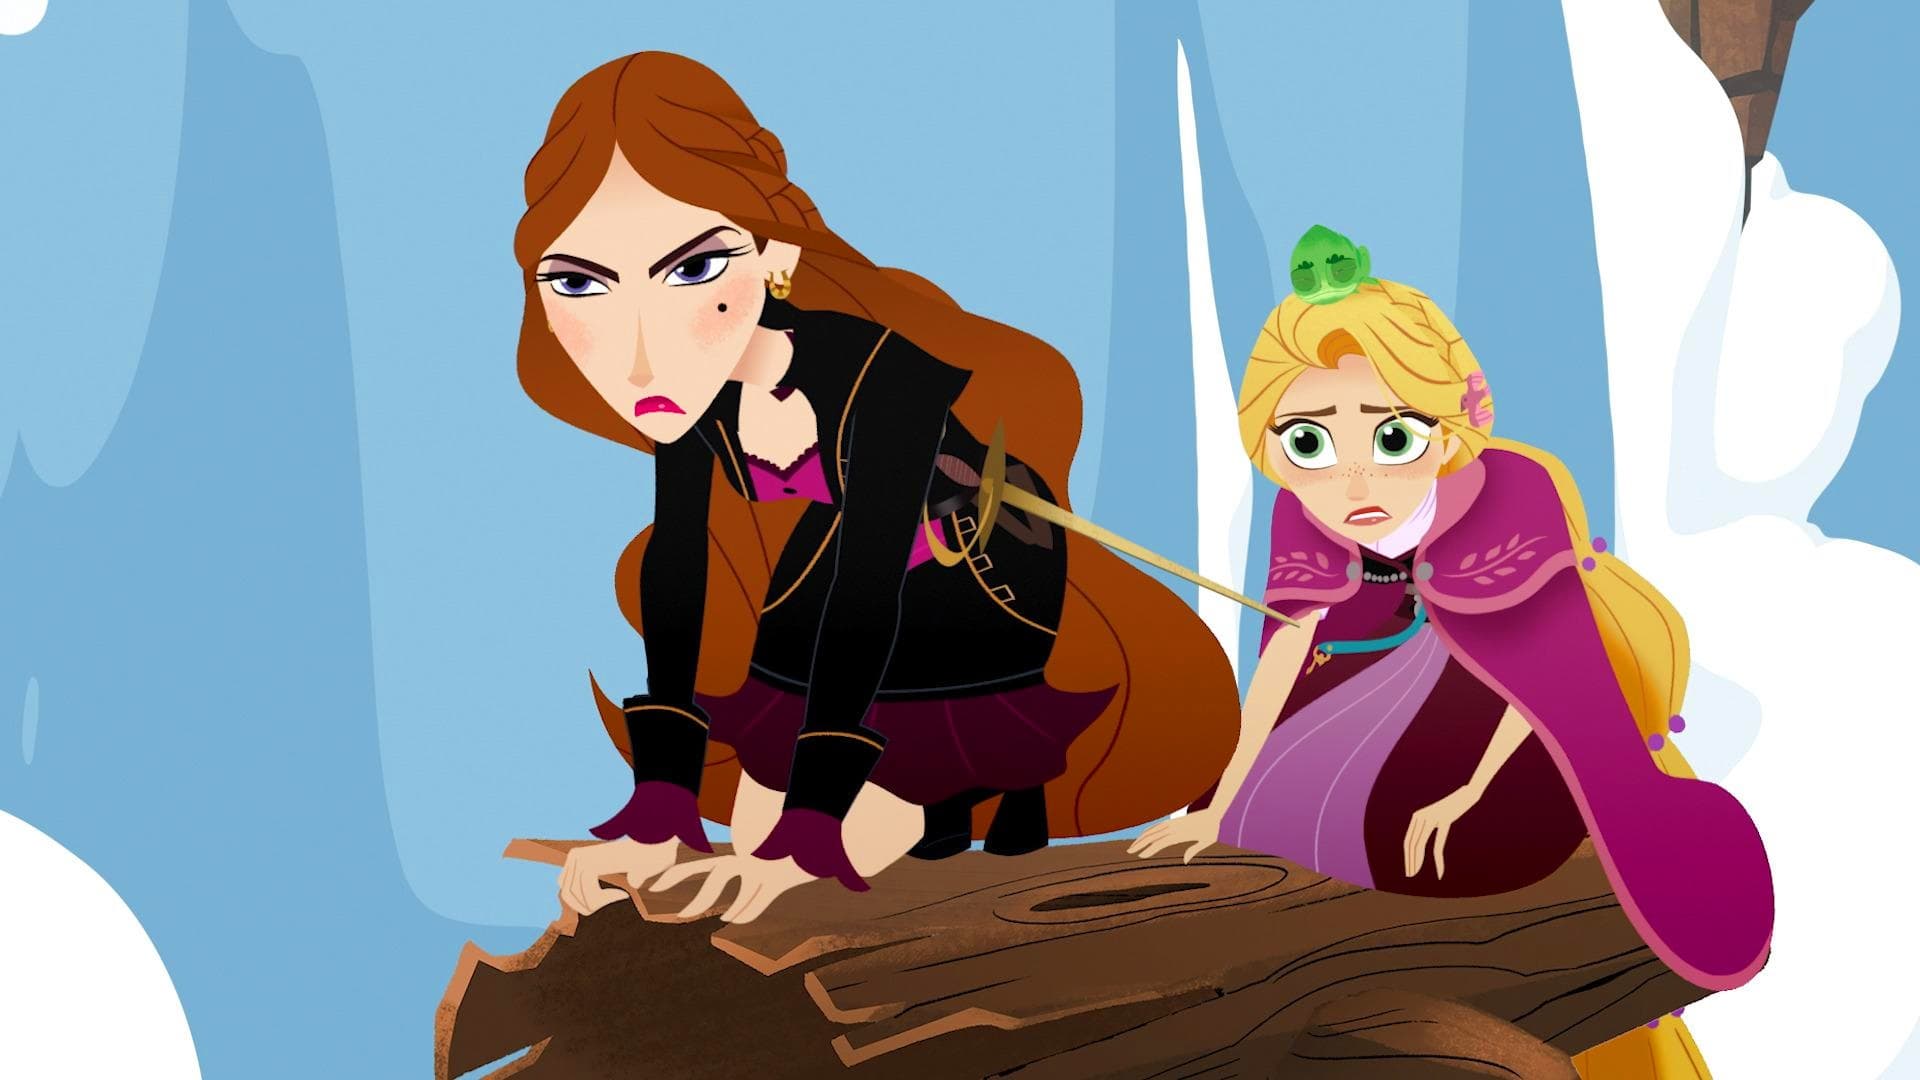 Rapunzel O Poveste Incalcita 2 Dublat In Romana Aventura Încâlcită a lui Rapunzel Sezonul 2 Episodul 13 Dublat în